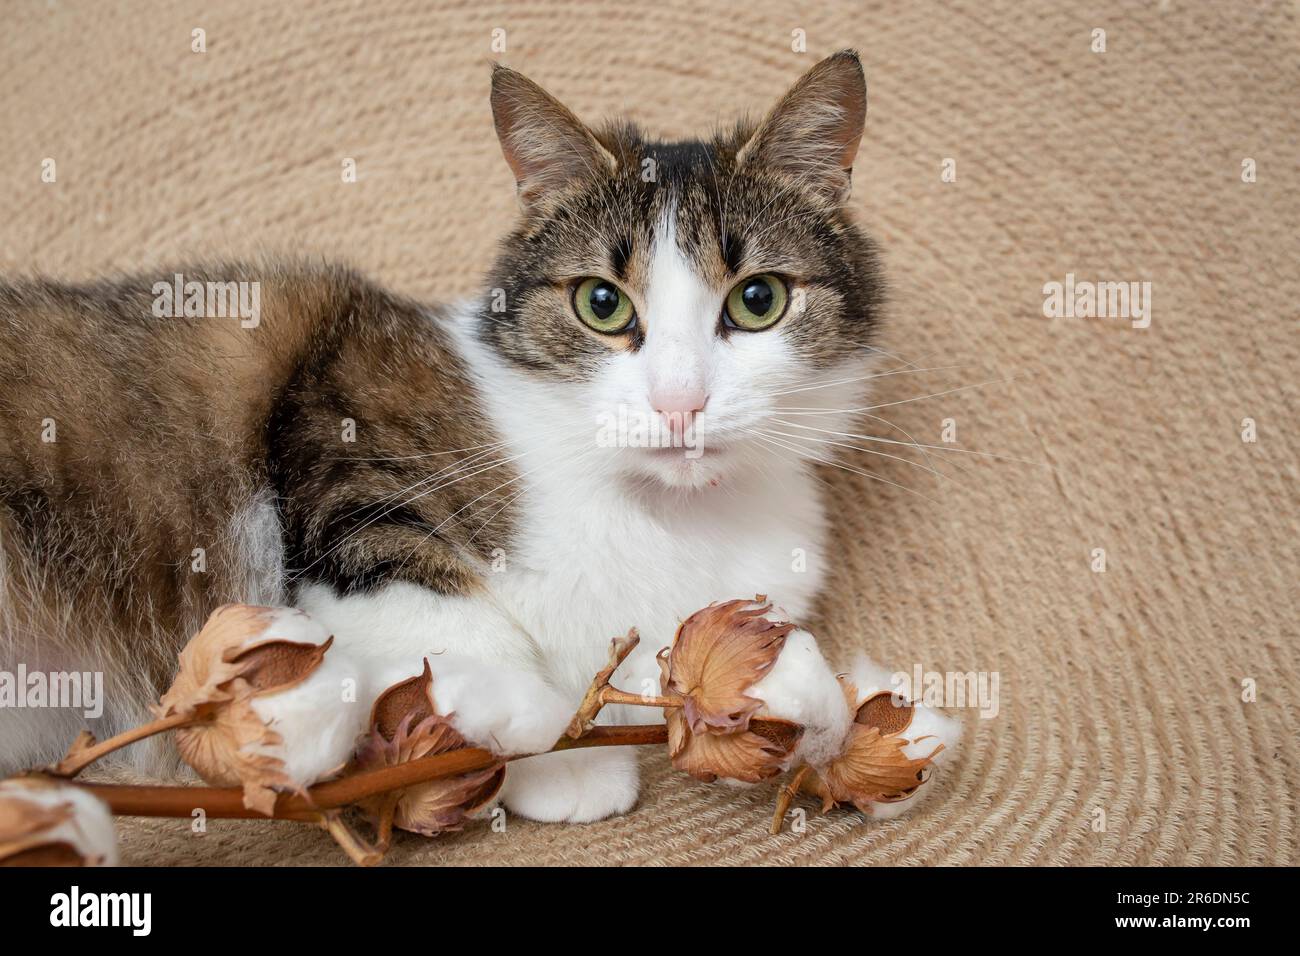 Chat mignon, regardant l'appareil photo, à côté des fleurs de coton, sur un tapis de corde de jute, portrait d'animal. Banque D'Images